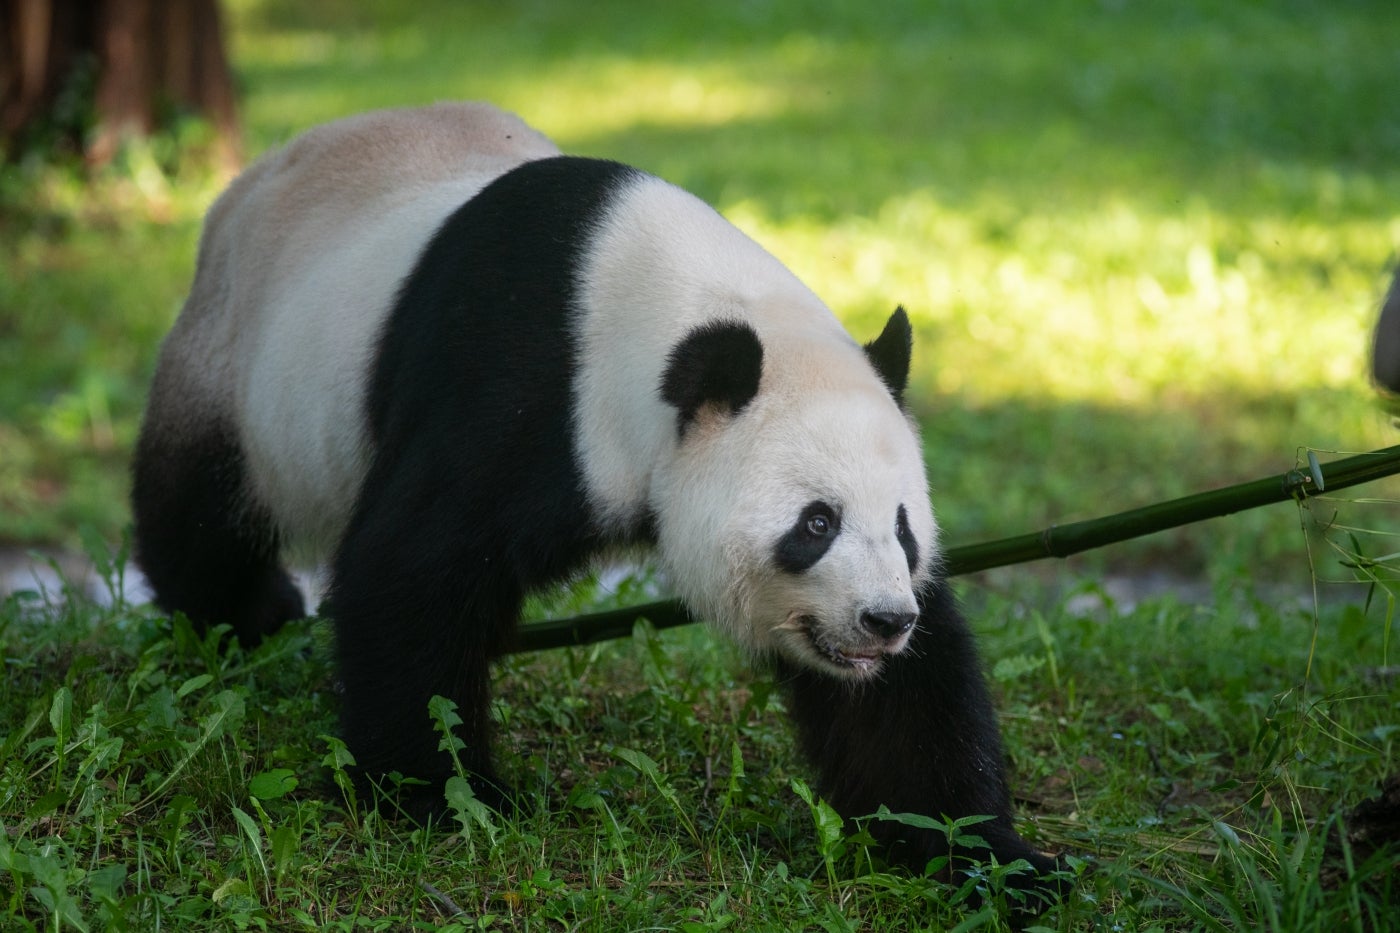 Male giant panda Tian Tian at the Smithsonian's National Zoo